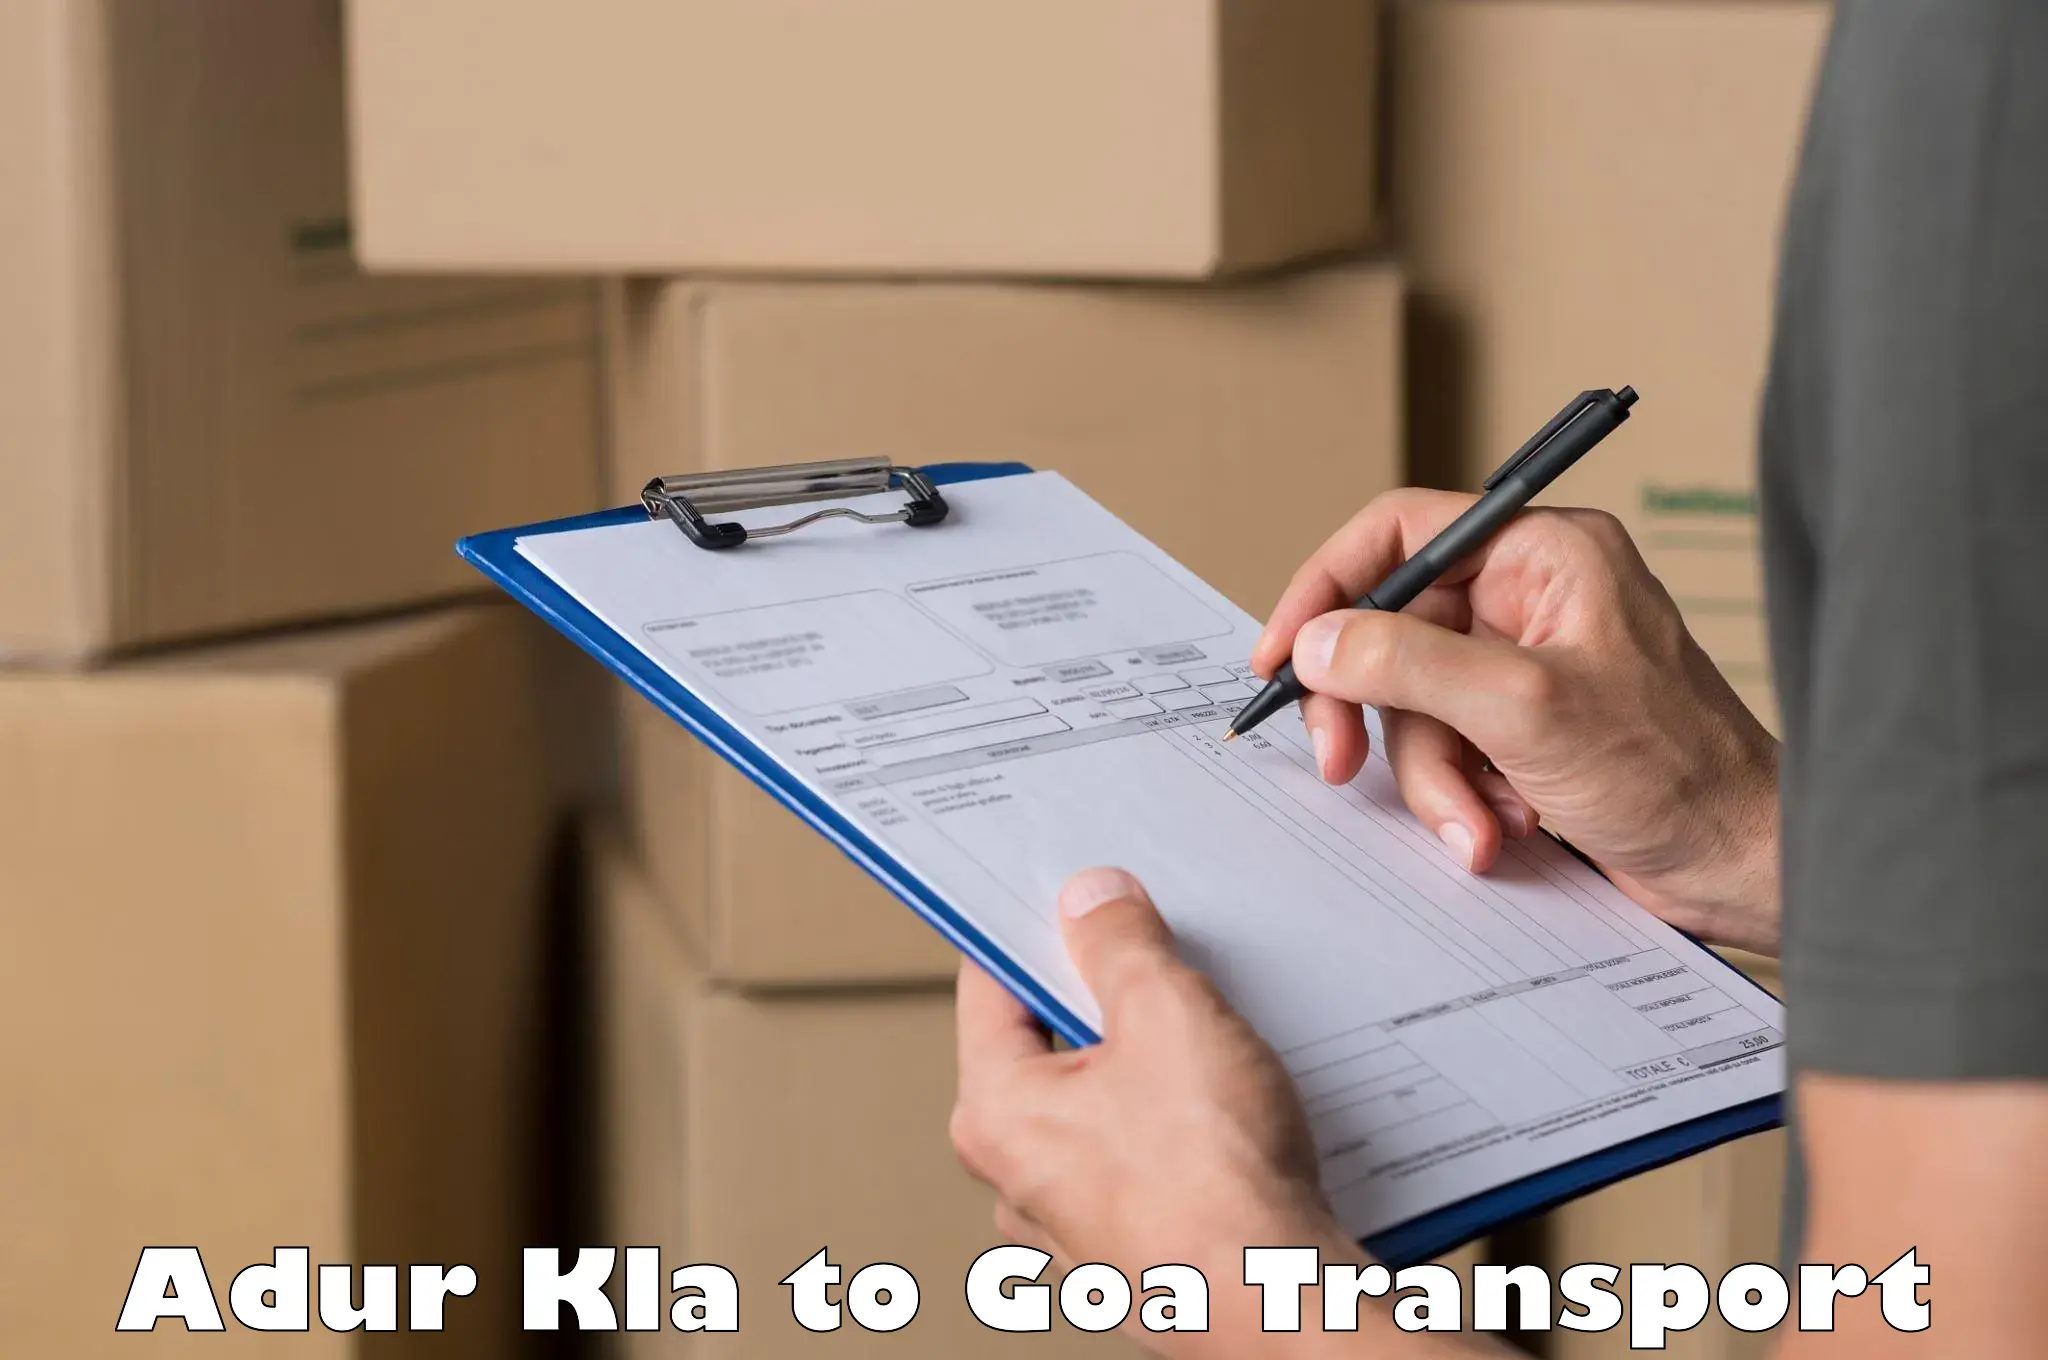 Logistics transportation services Adur Kla to Mormugao Port